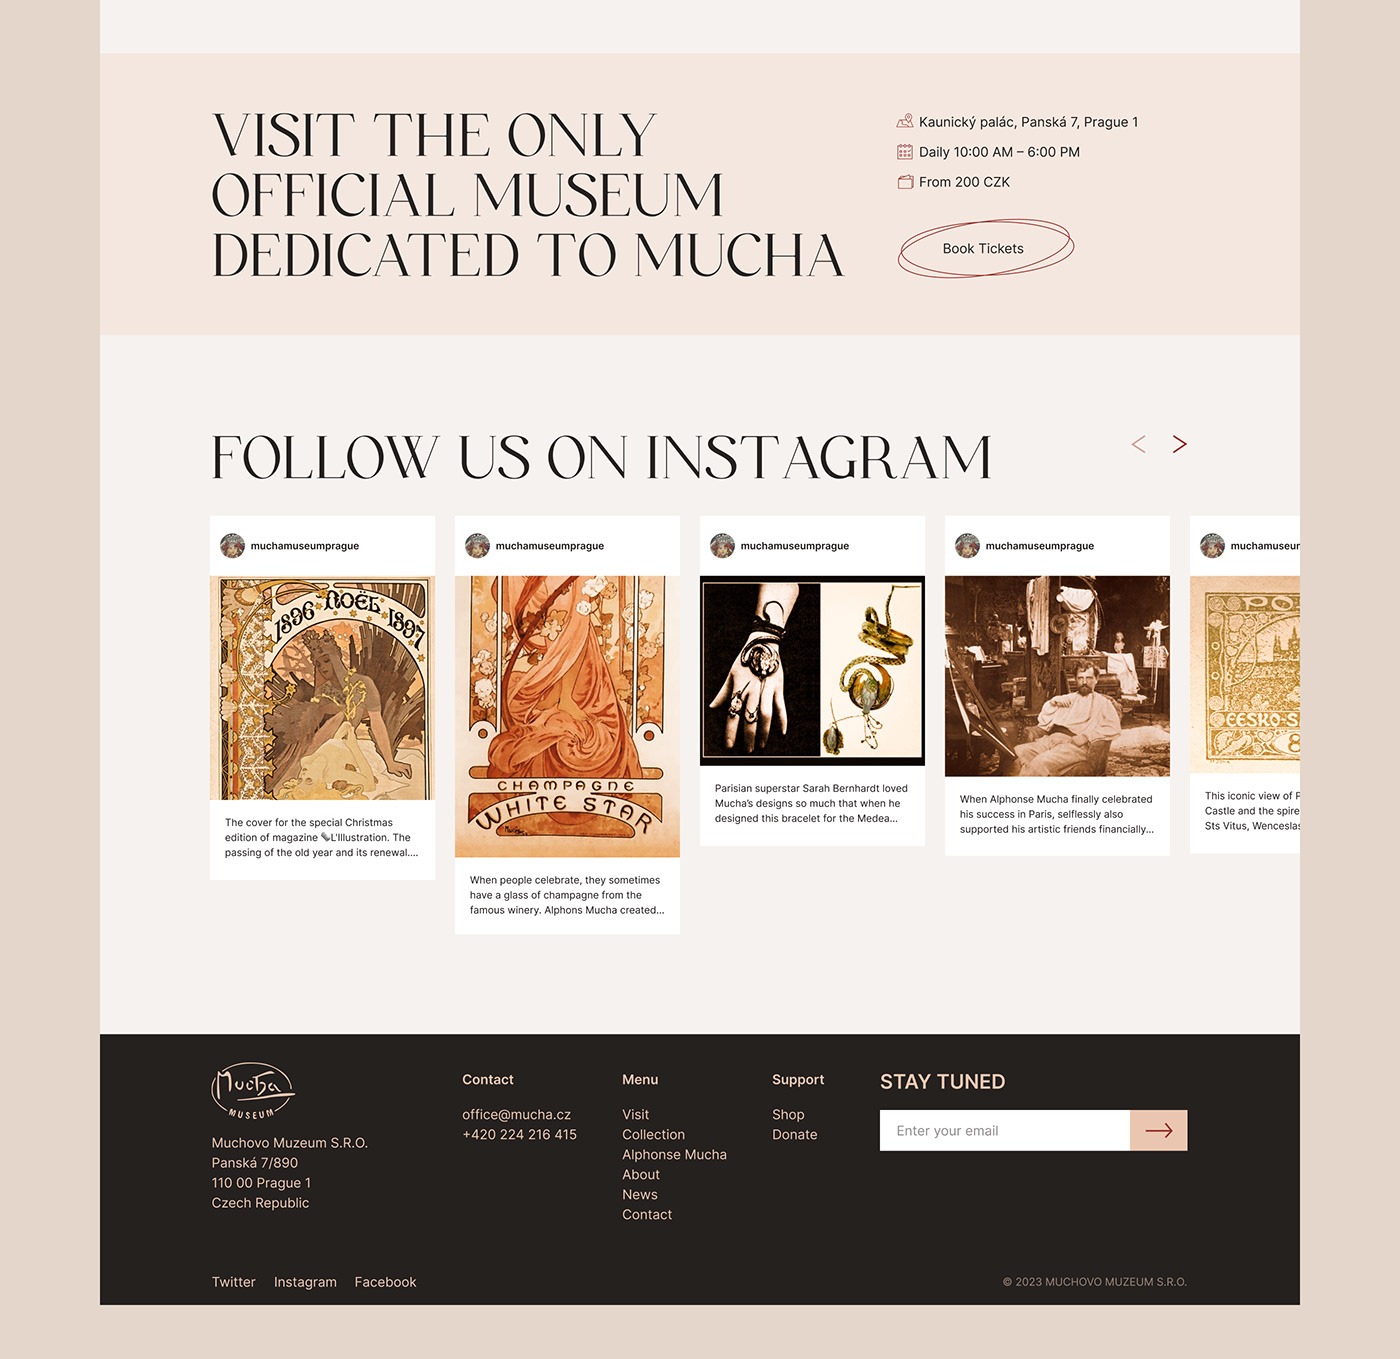 Alphonse Mucha art nouveau prague museum gallery art Website redesign UX UI